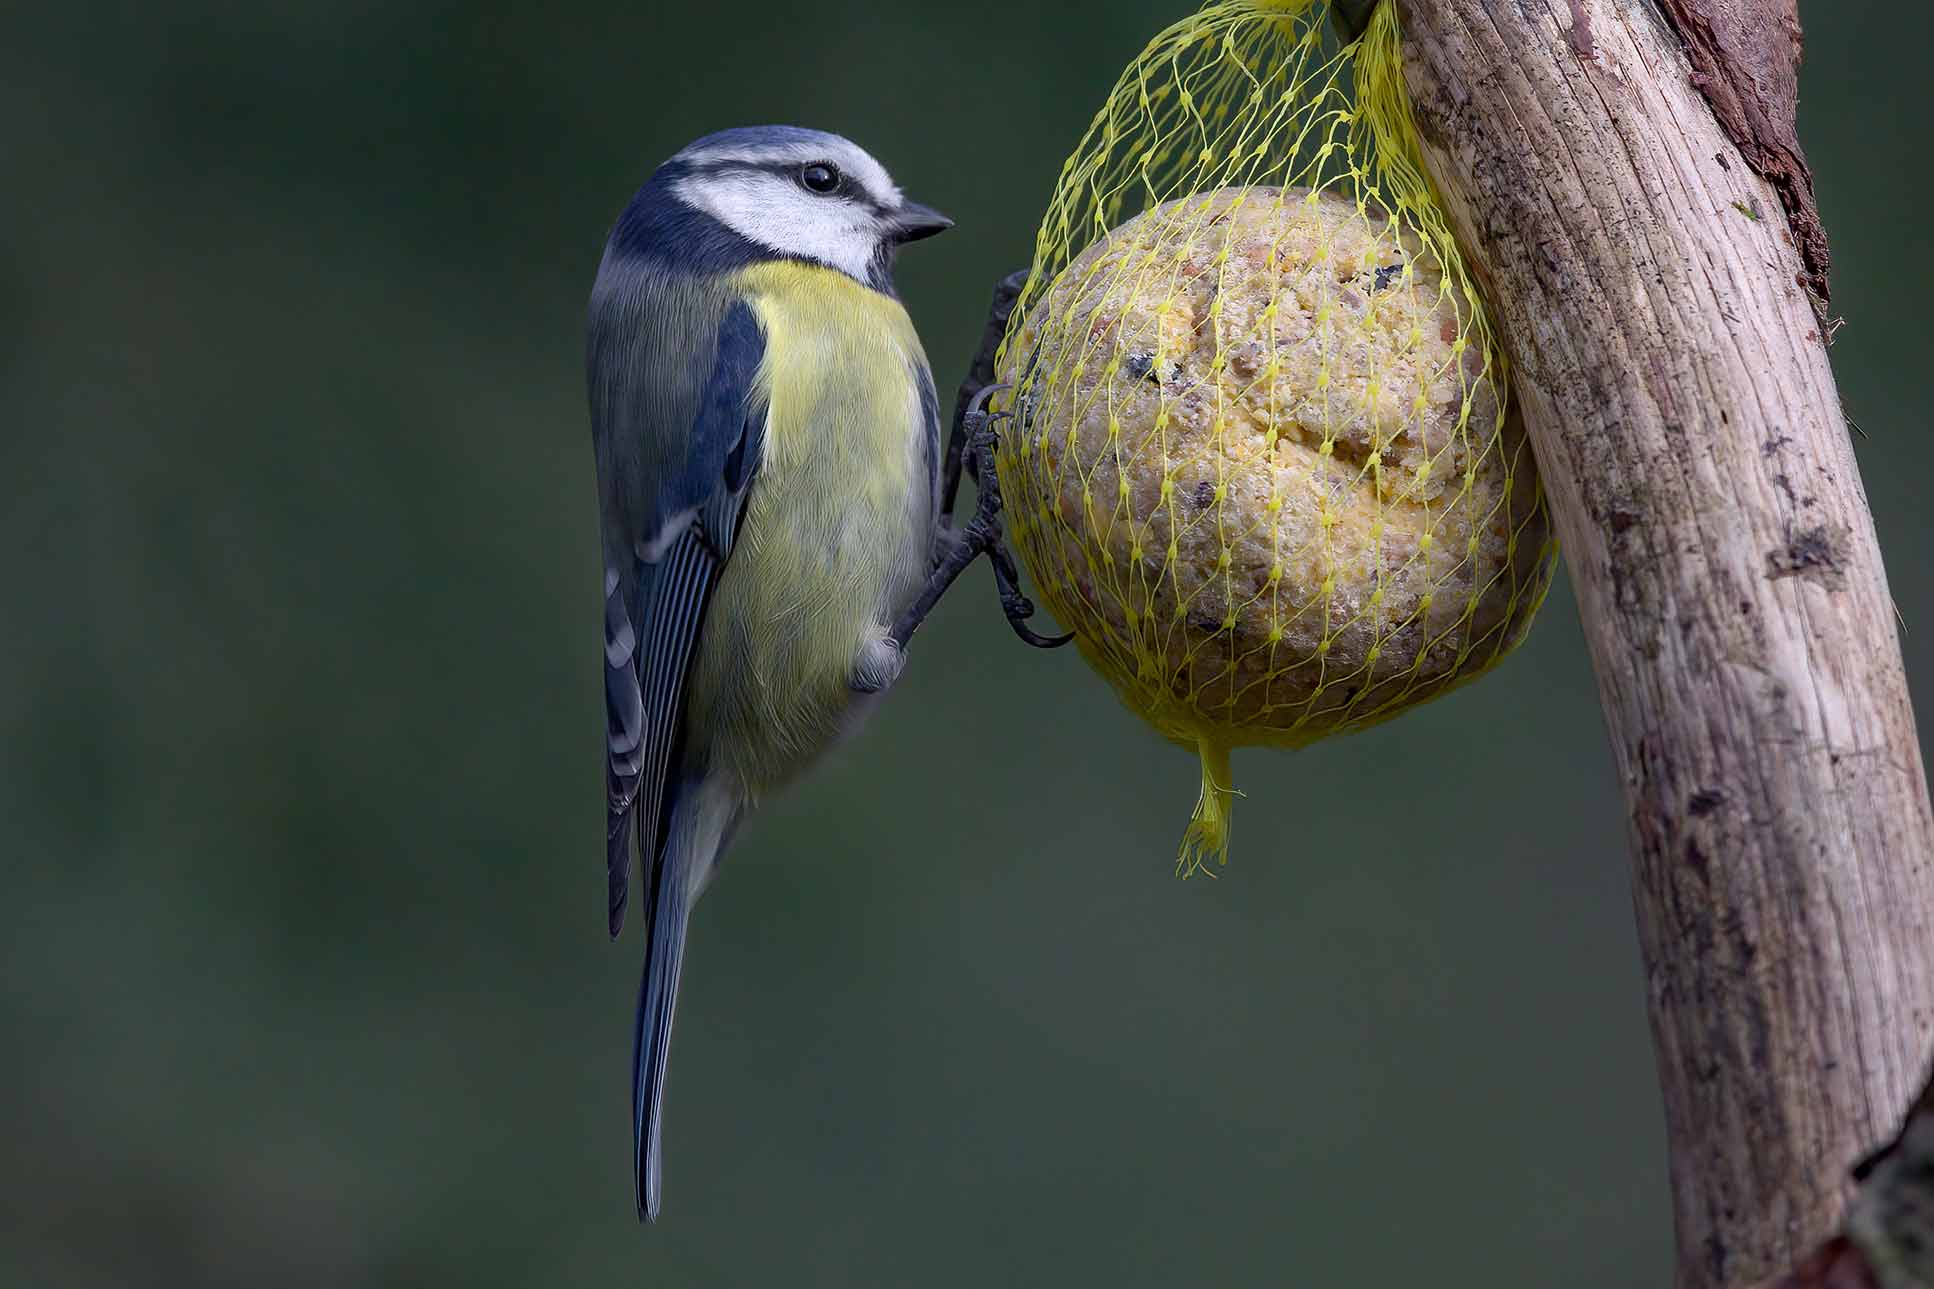 Nourrir les oiseaux - Ce à quoi il faut faire attention